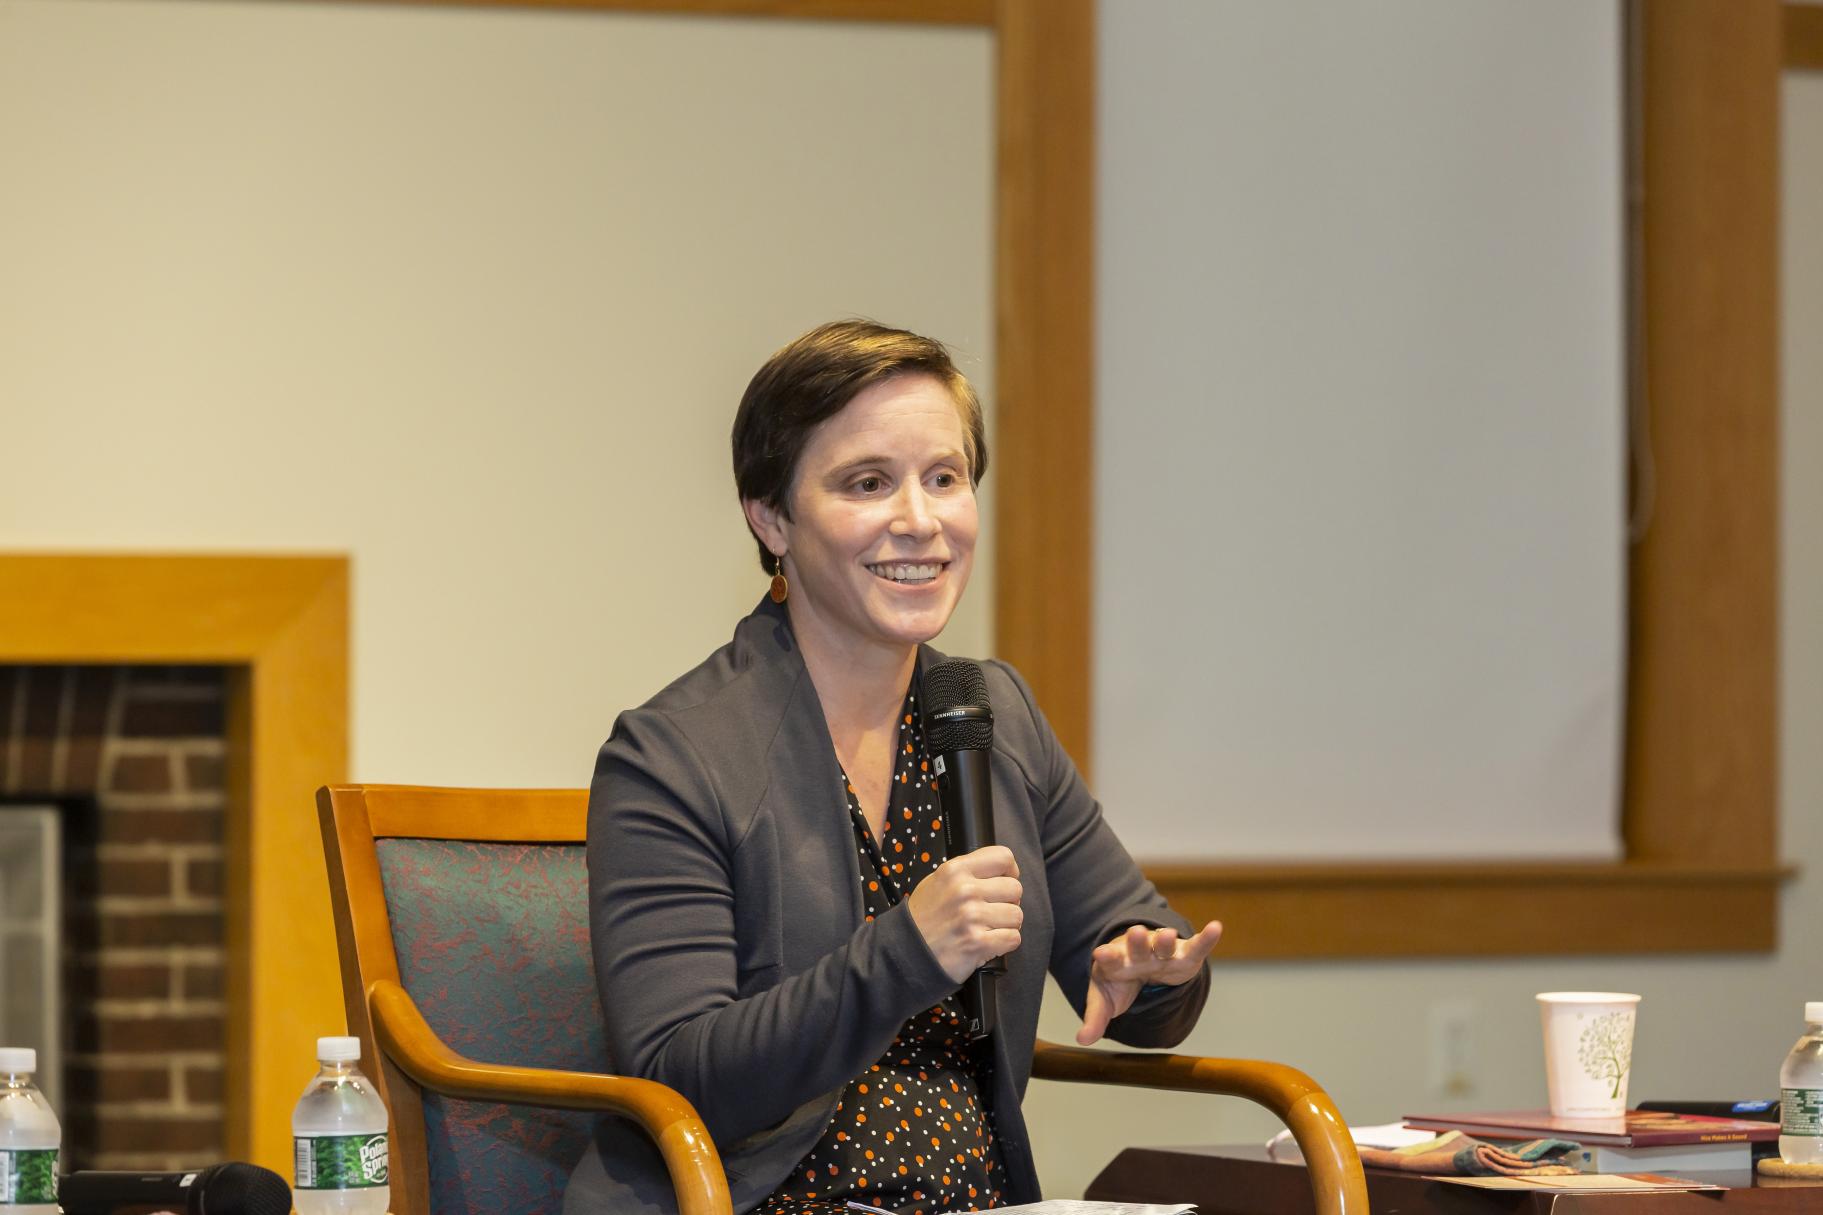 Dr. Karen Ross of UMass Boston speaking at the 2022 Ikeda Forum